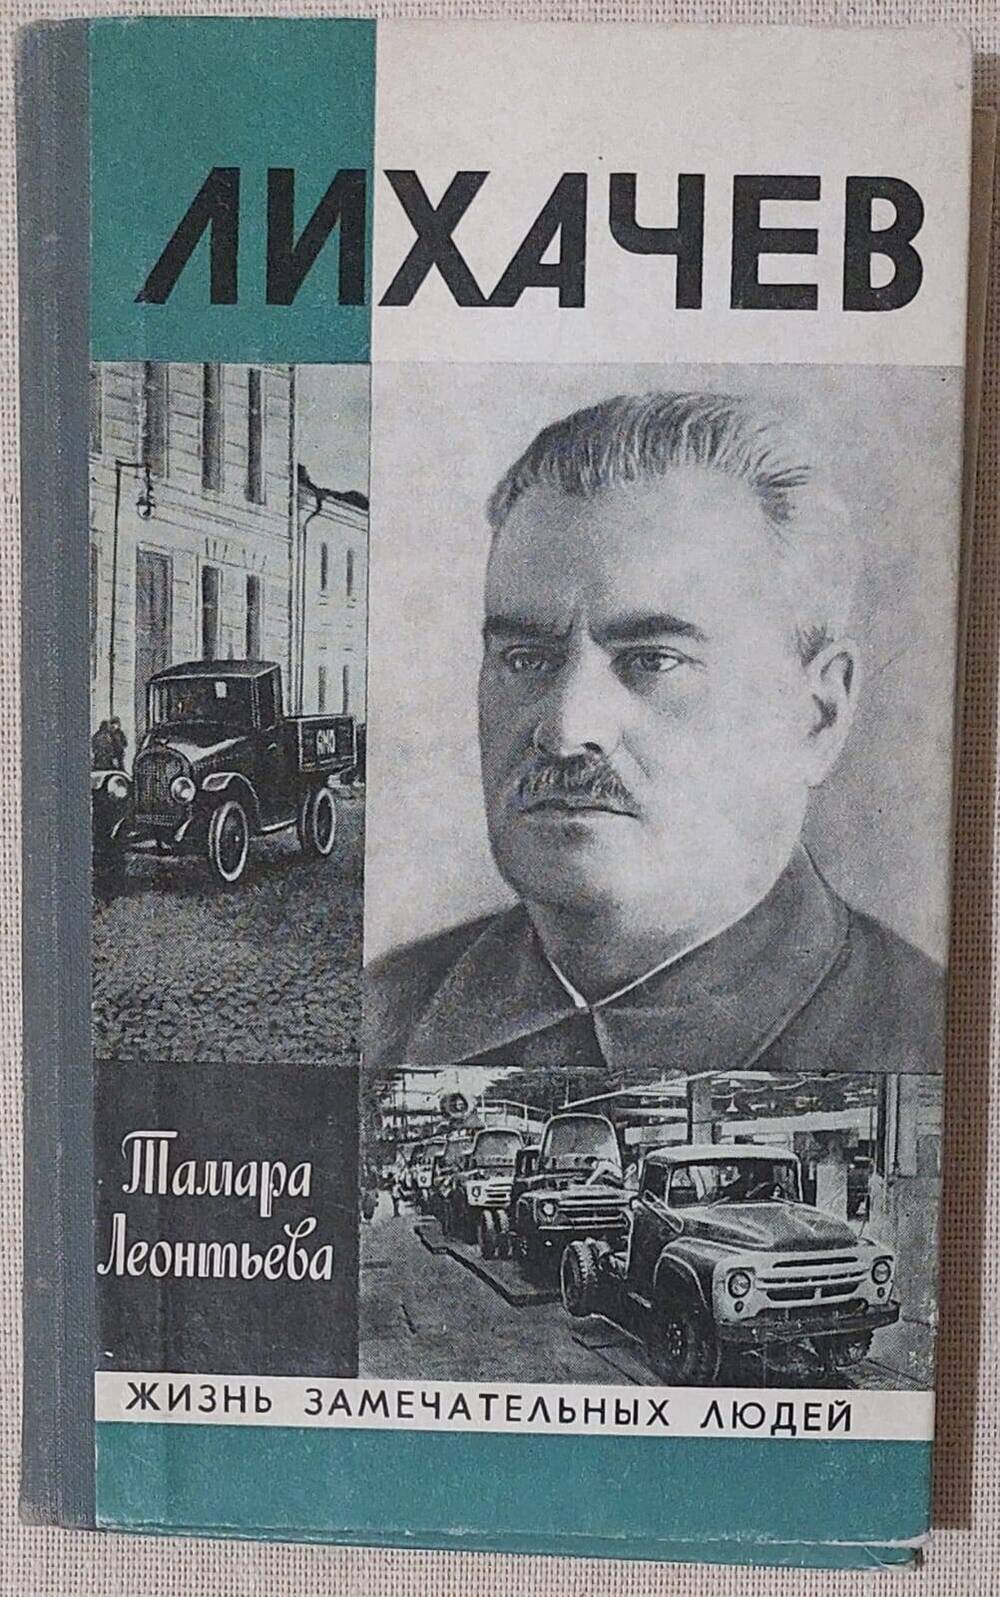 Книга Лихачев, автор Т.К. Леонтьева